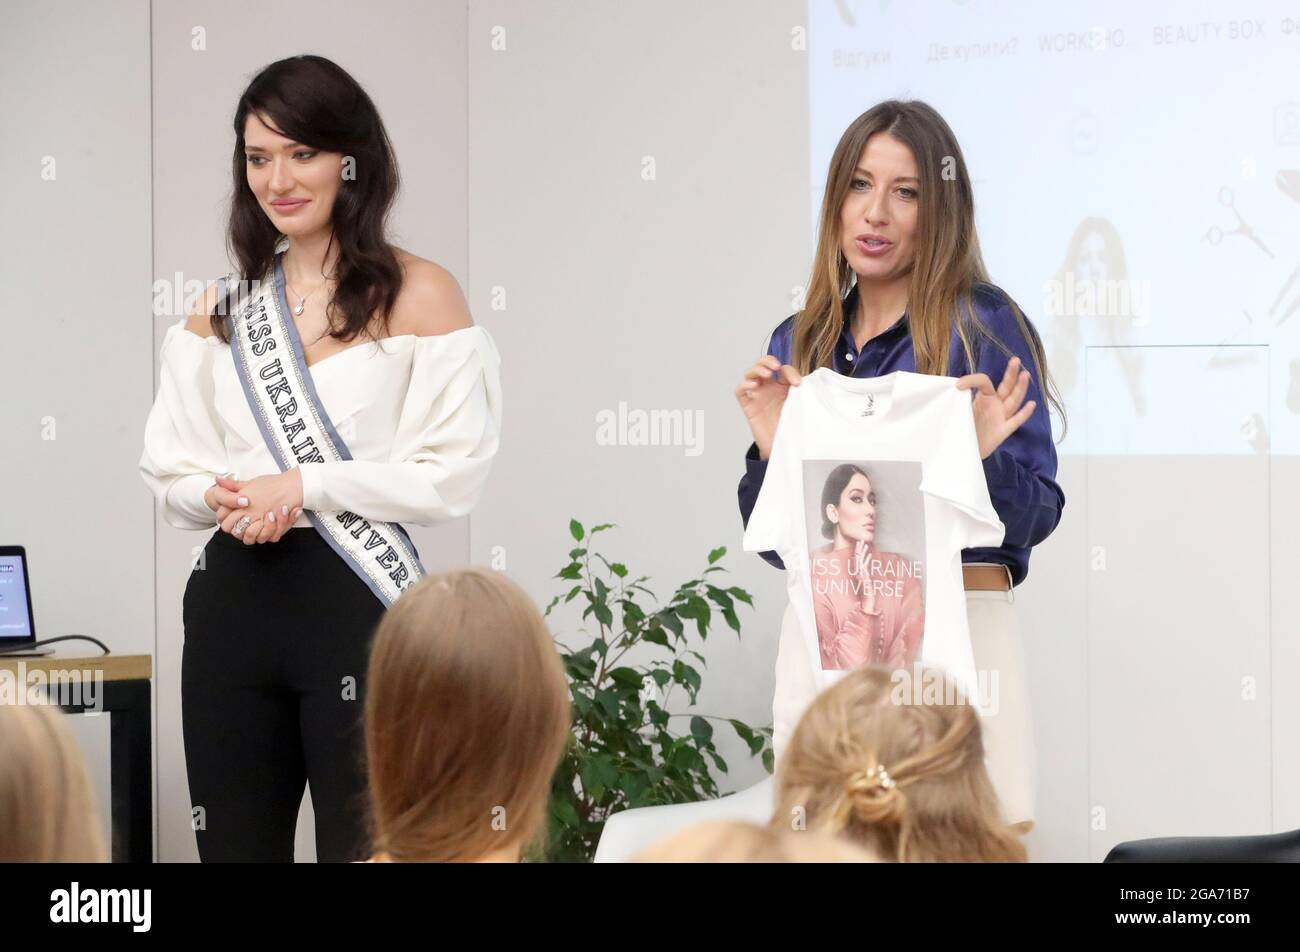 KIEW, UKRAINE - 28. JULI 2021 - Miss Ukraine Universe 2020 Yelyzaveta Yastremska (L) nimmt an der Auswahlphase des Schönheitswettbewerben in Kiew, Capita, Teil Stockfoto